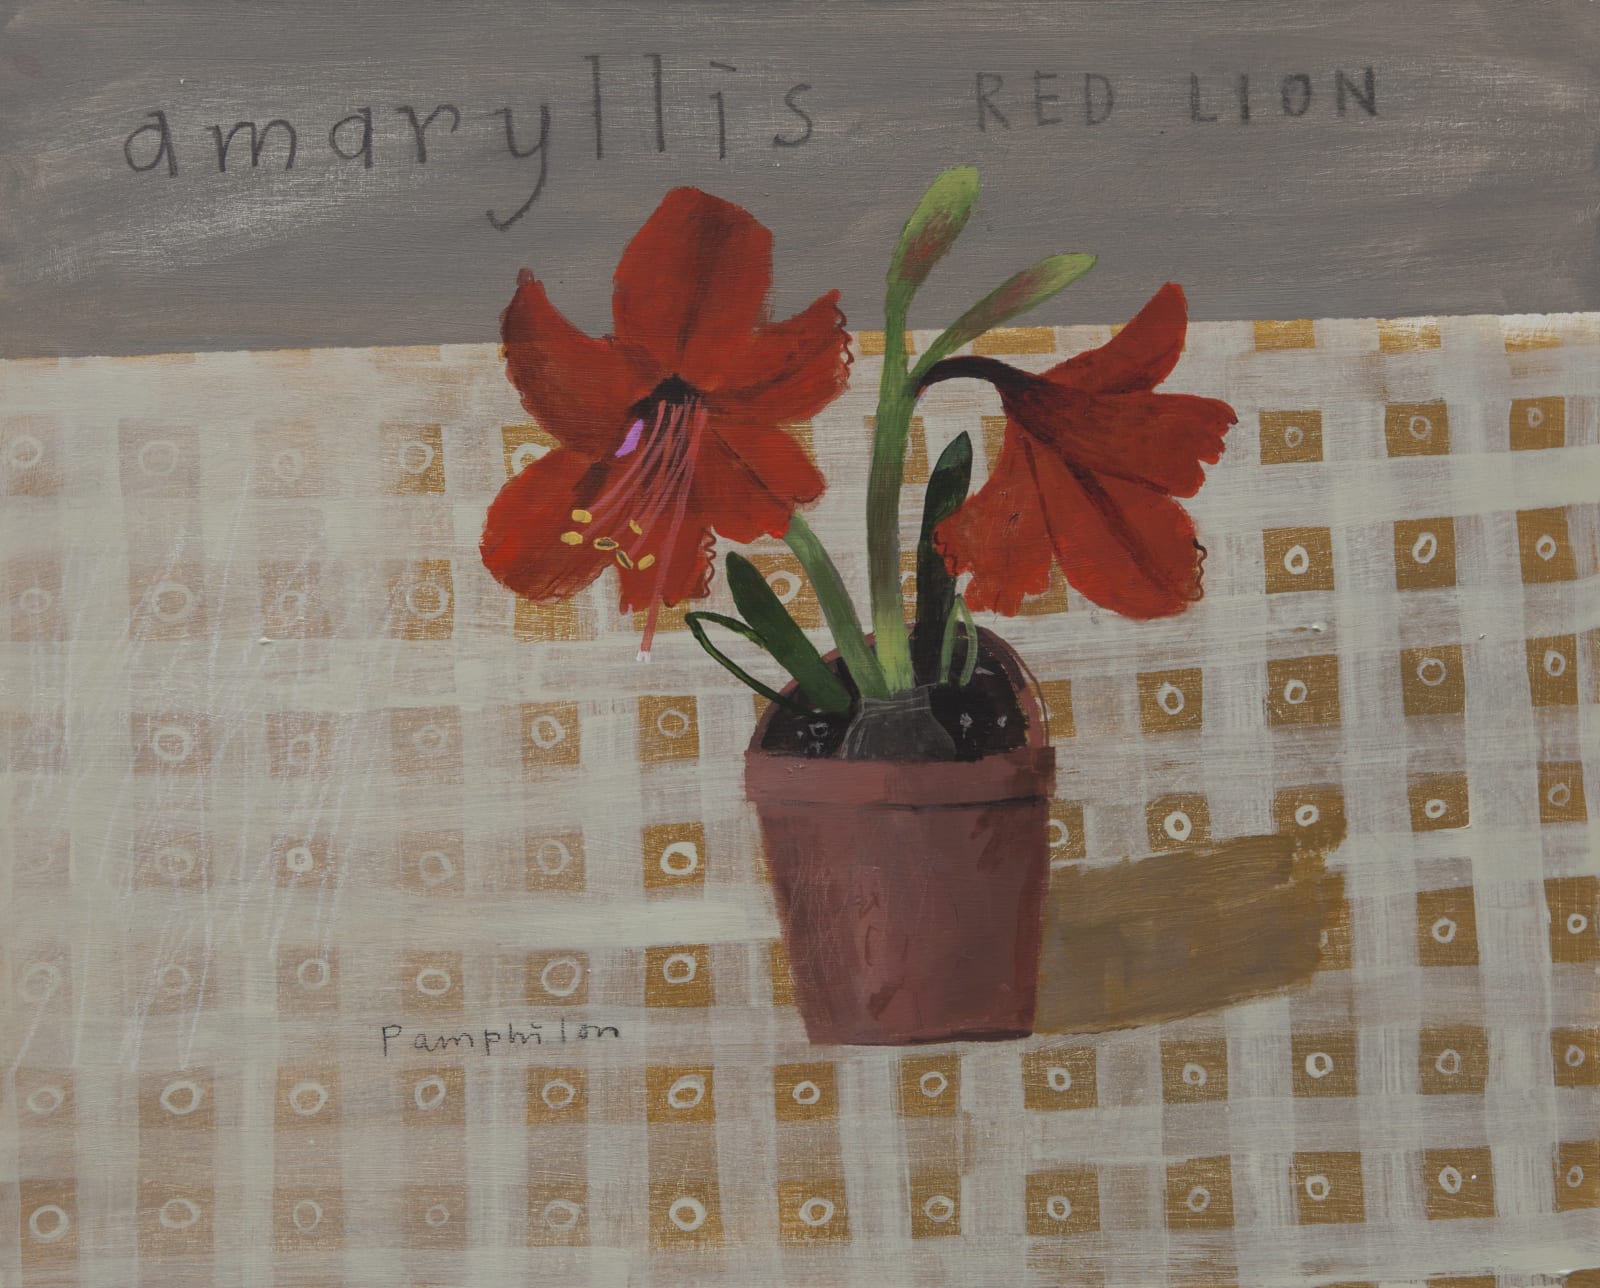 Elaine Pamphilon, Amaryllis Red Lion